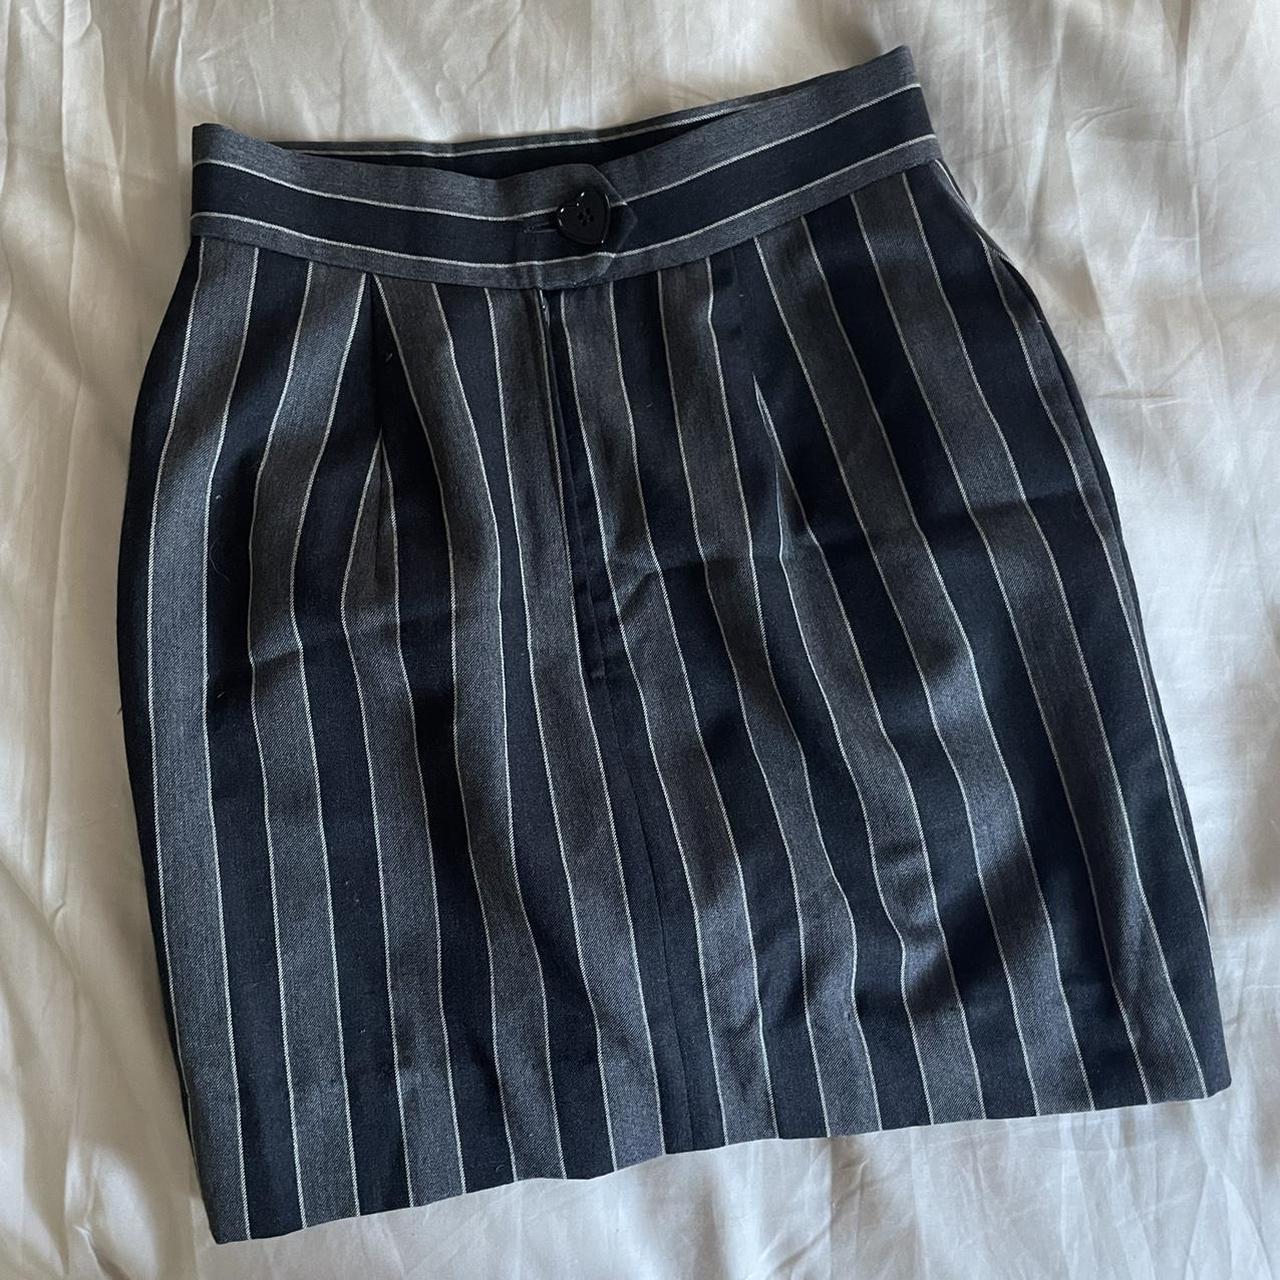 Moschino Cheap & Chic Women's Skirt (2)